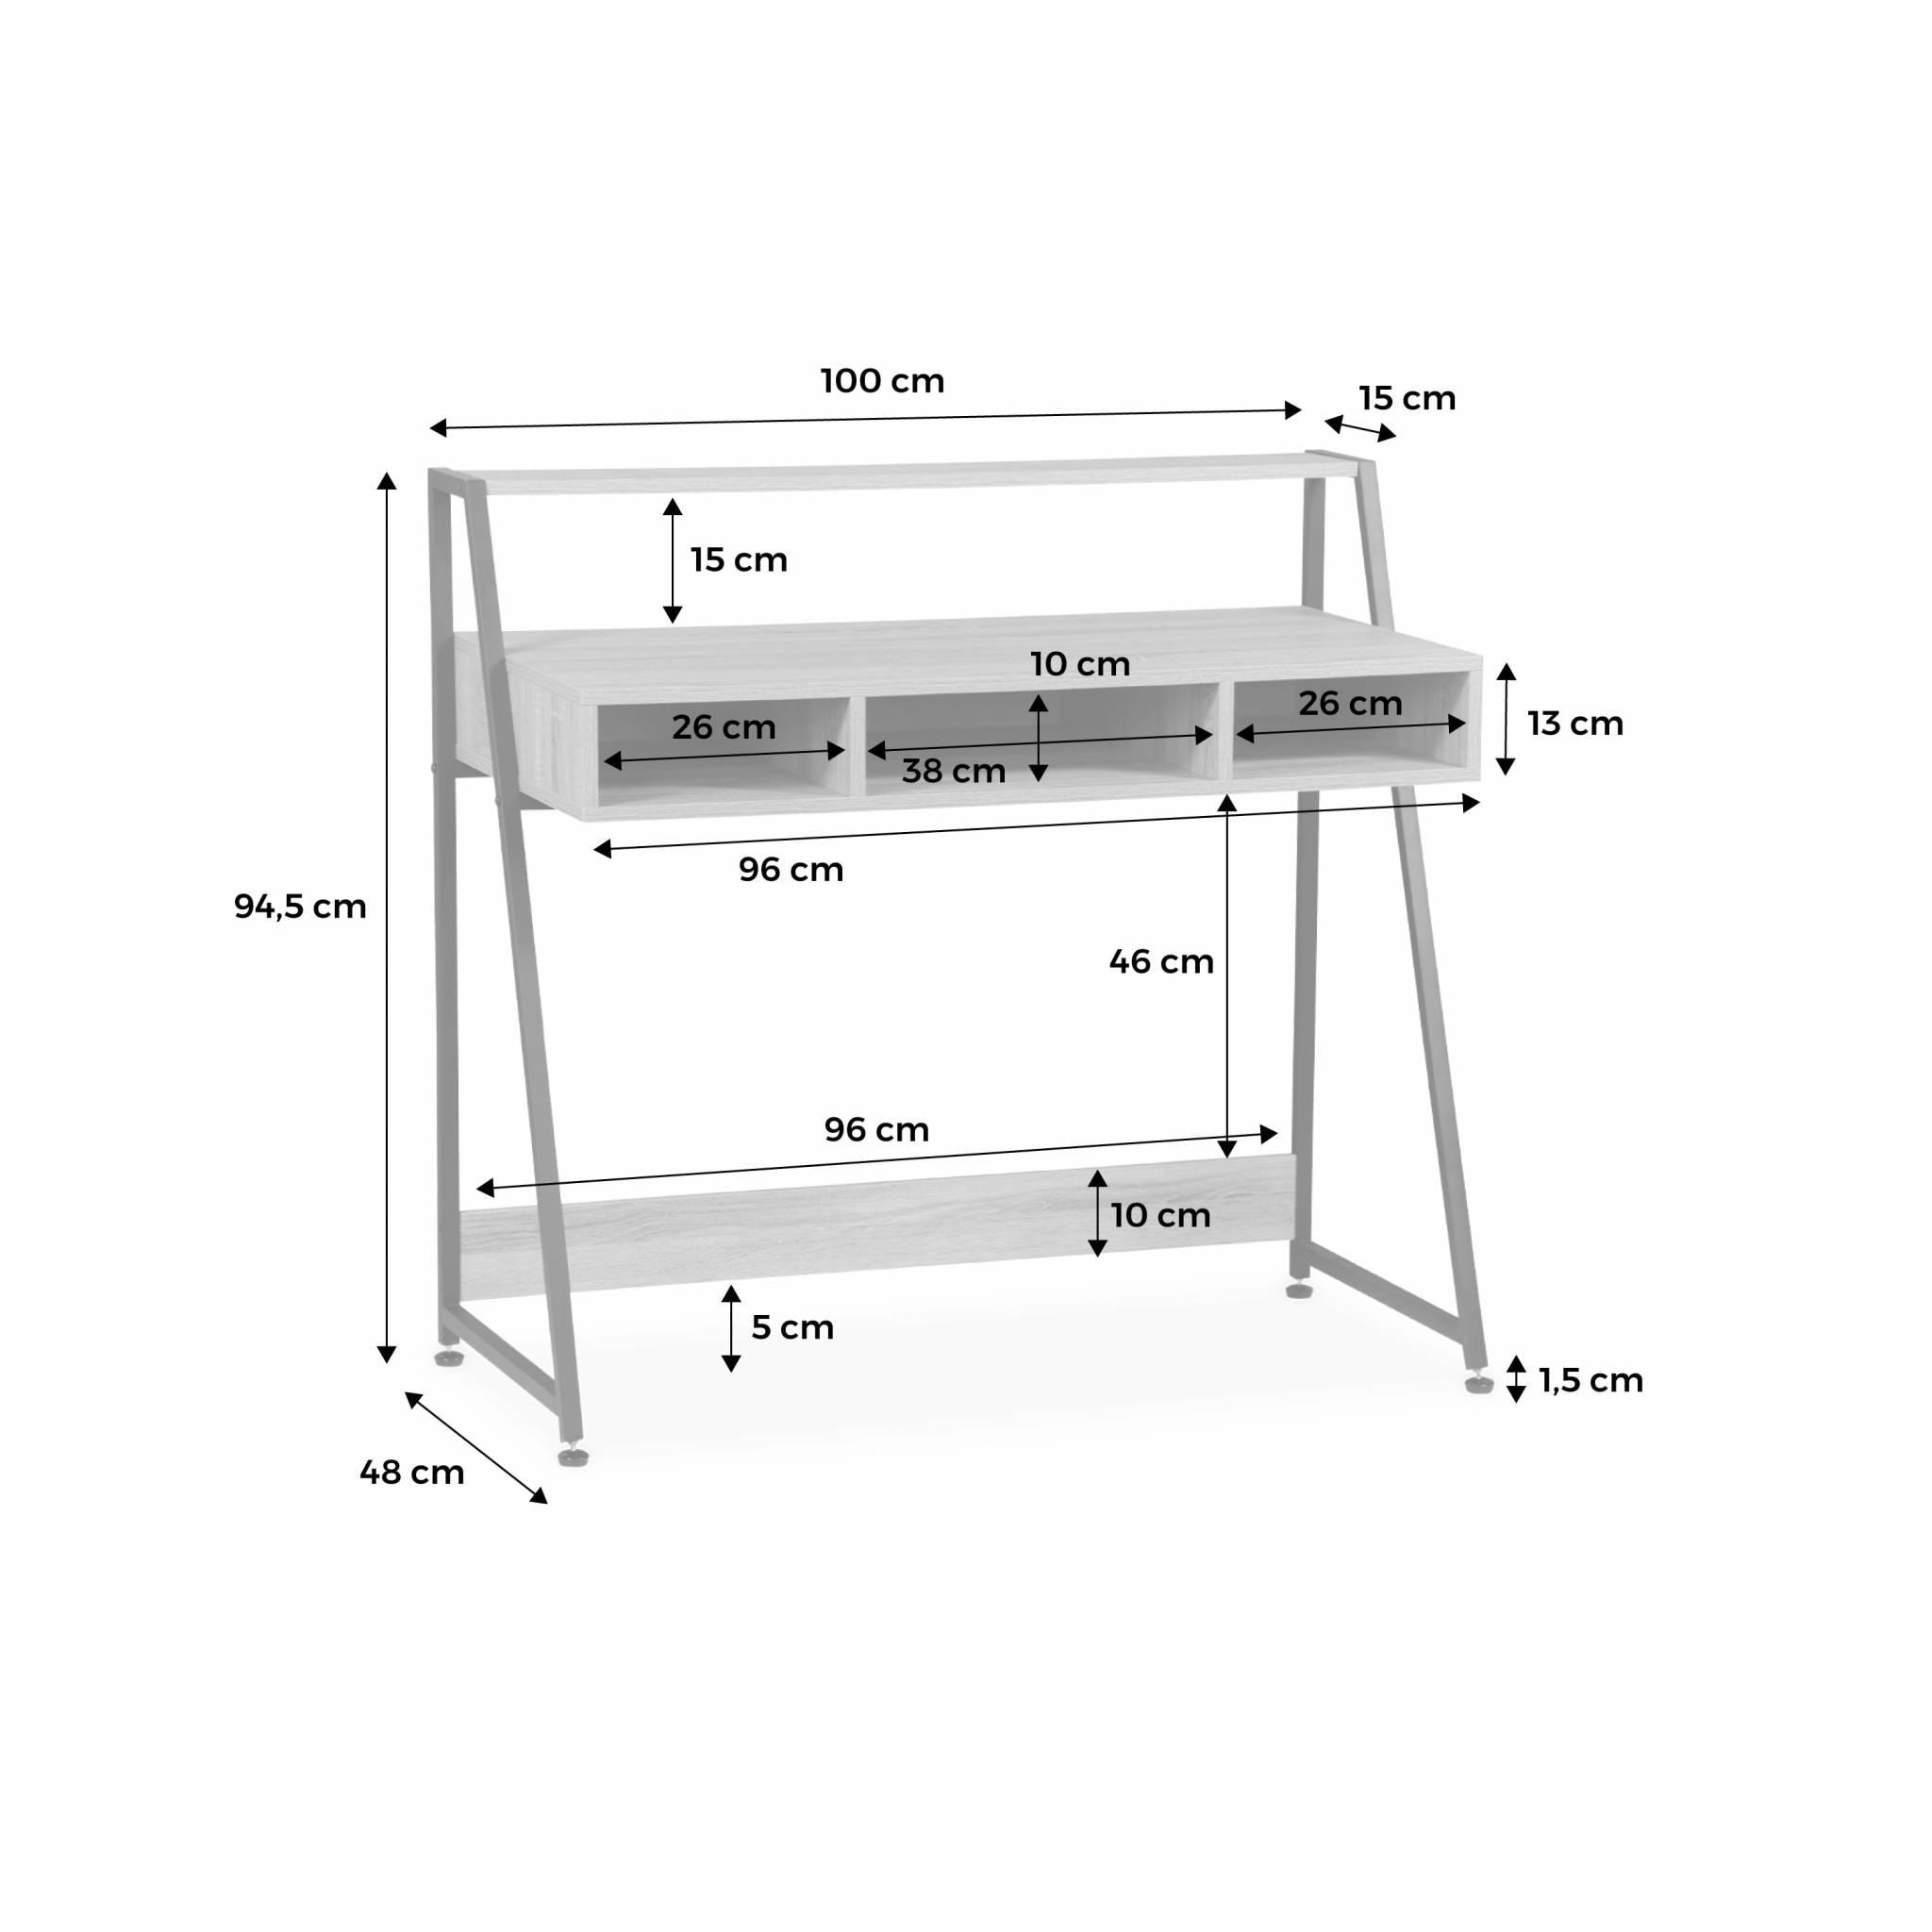 Bureau - LOFT - 3 casiers de rangement - 1 étagère - décor bois et métal - L 100 x l 48 x H 94.5cm